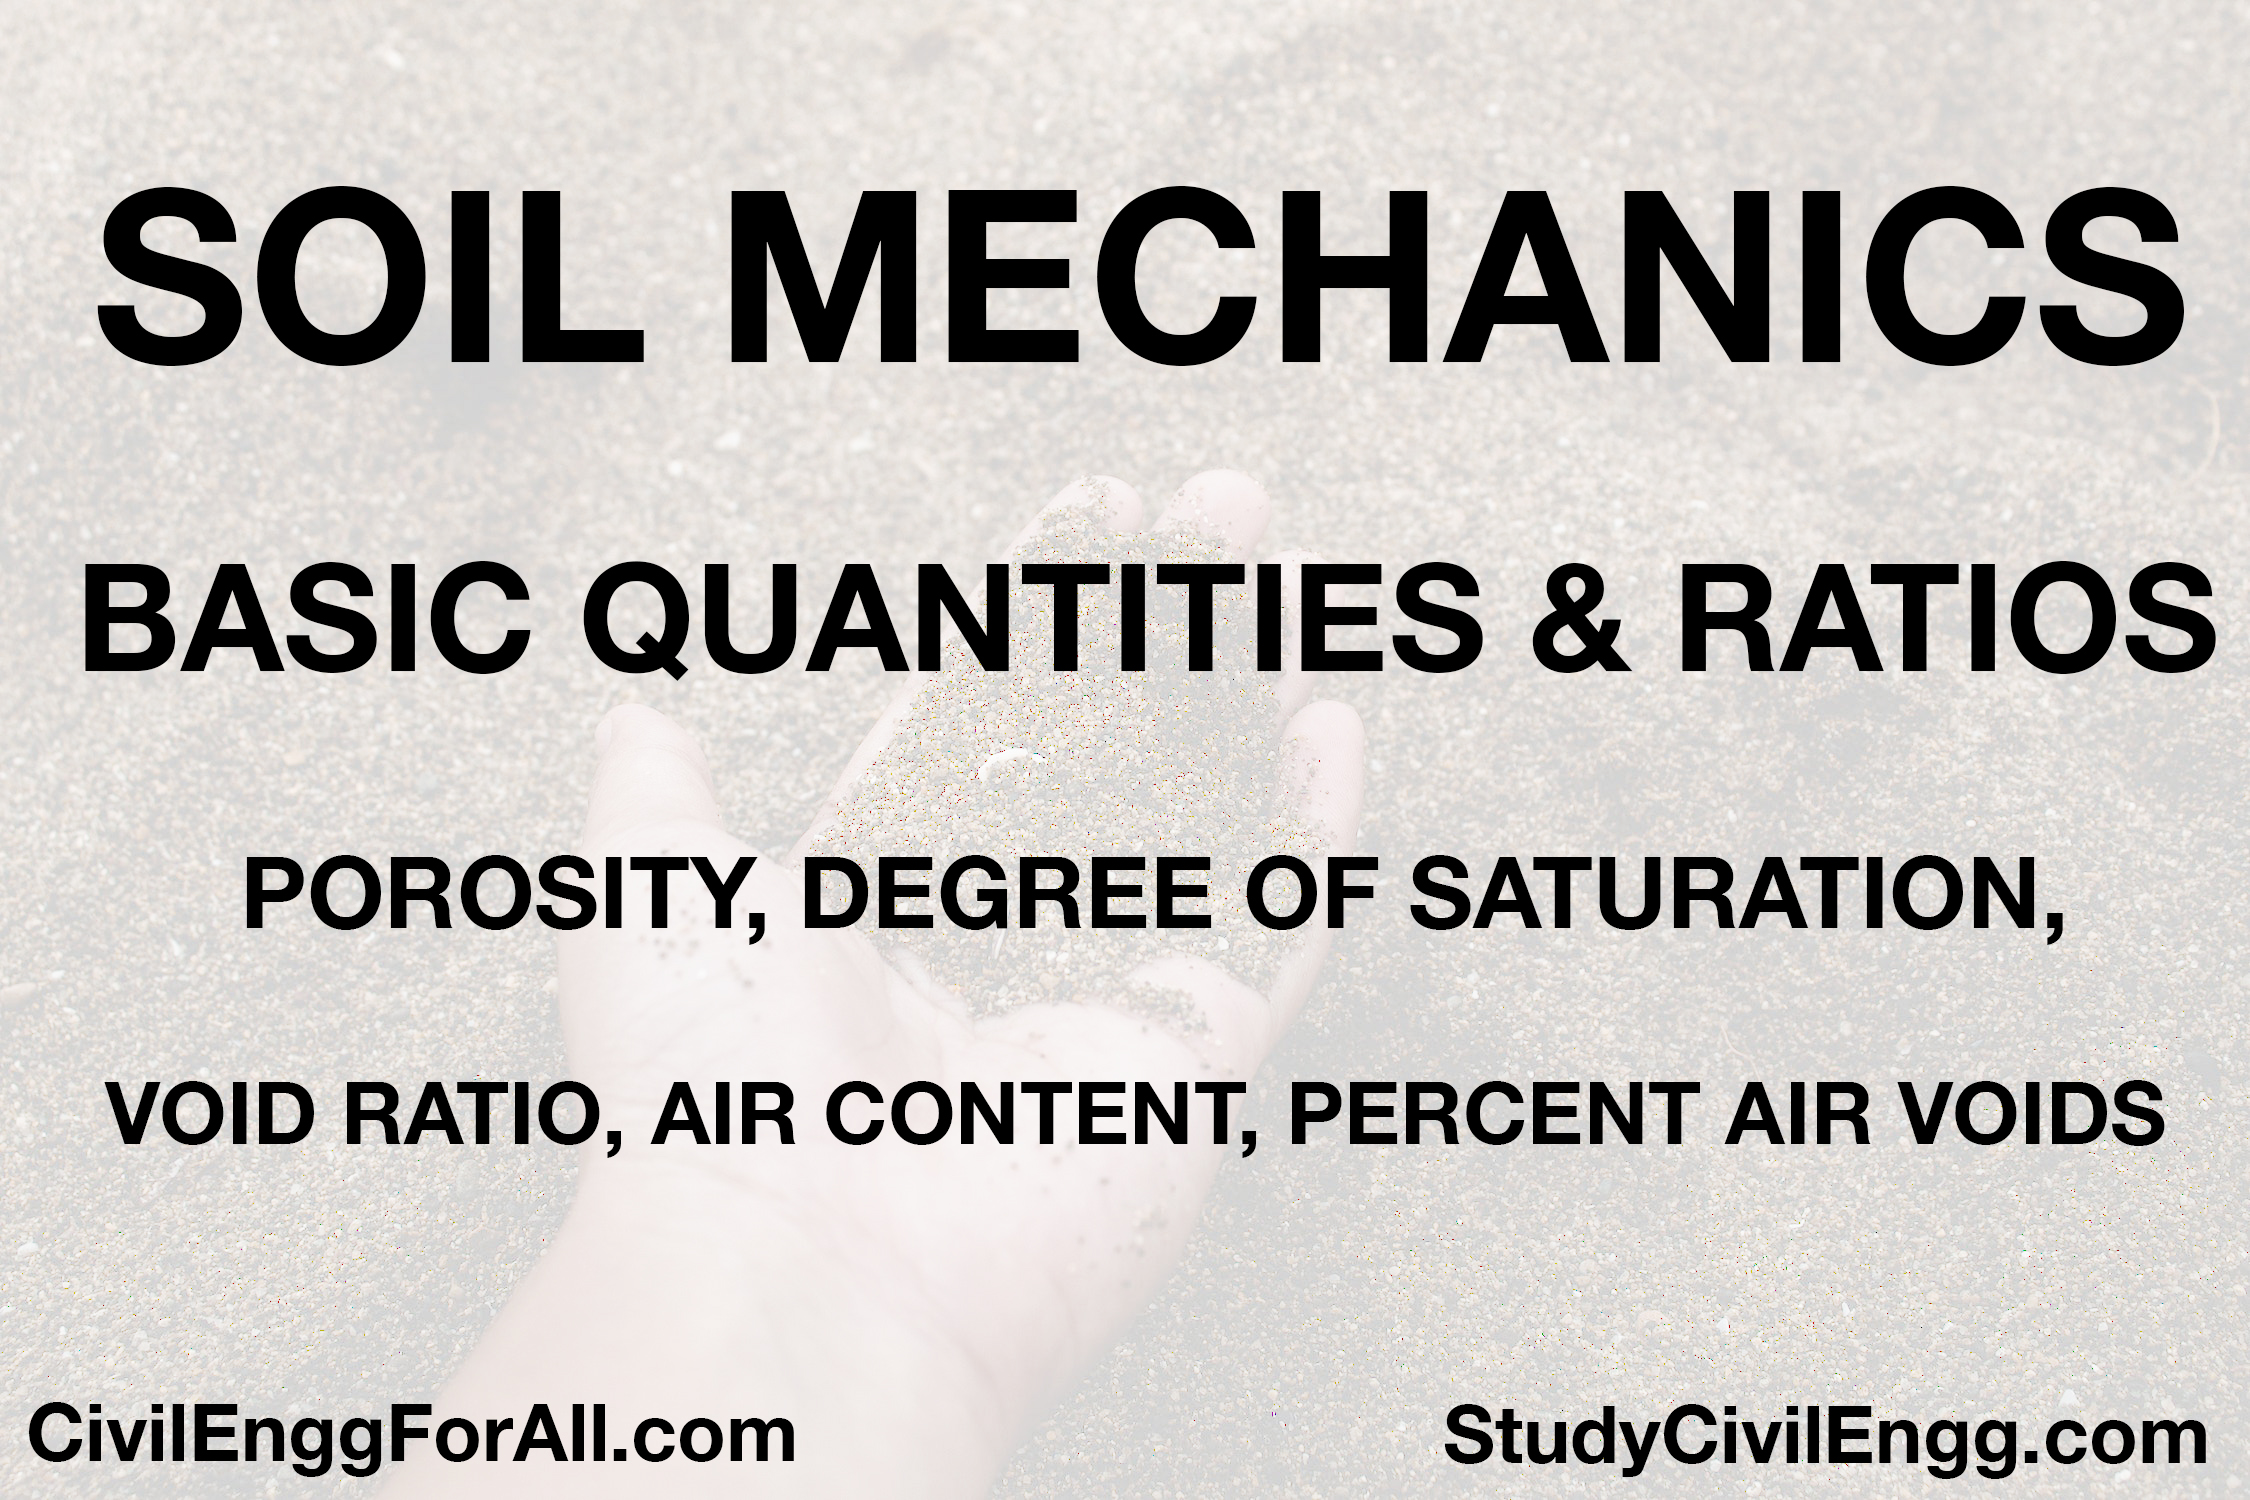 Basic Quantities & Ratios - Porosity, Void Ratio, Air Content, Degree of Saturation, Percent Air Voids - StudyCivilEngg.com